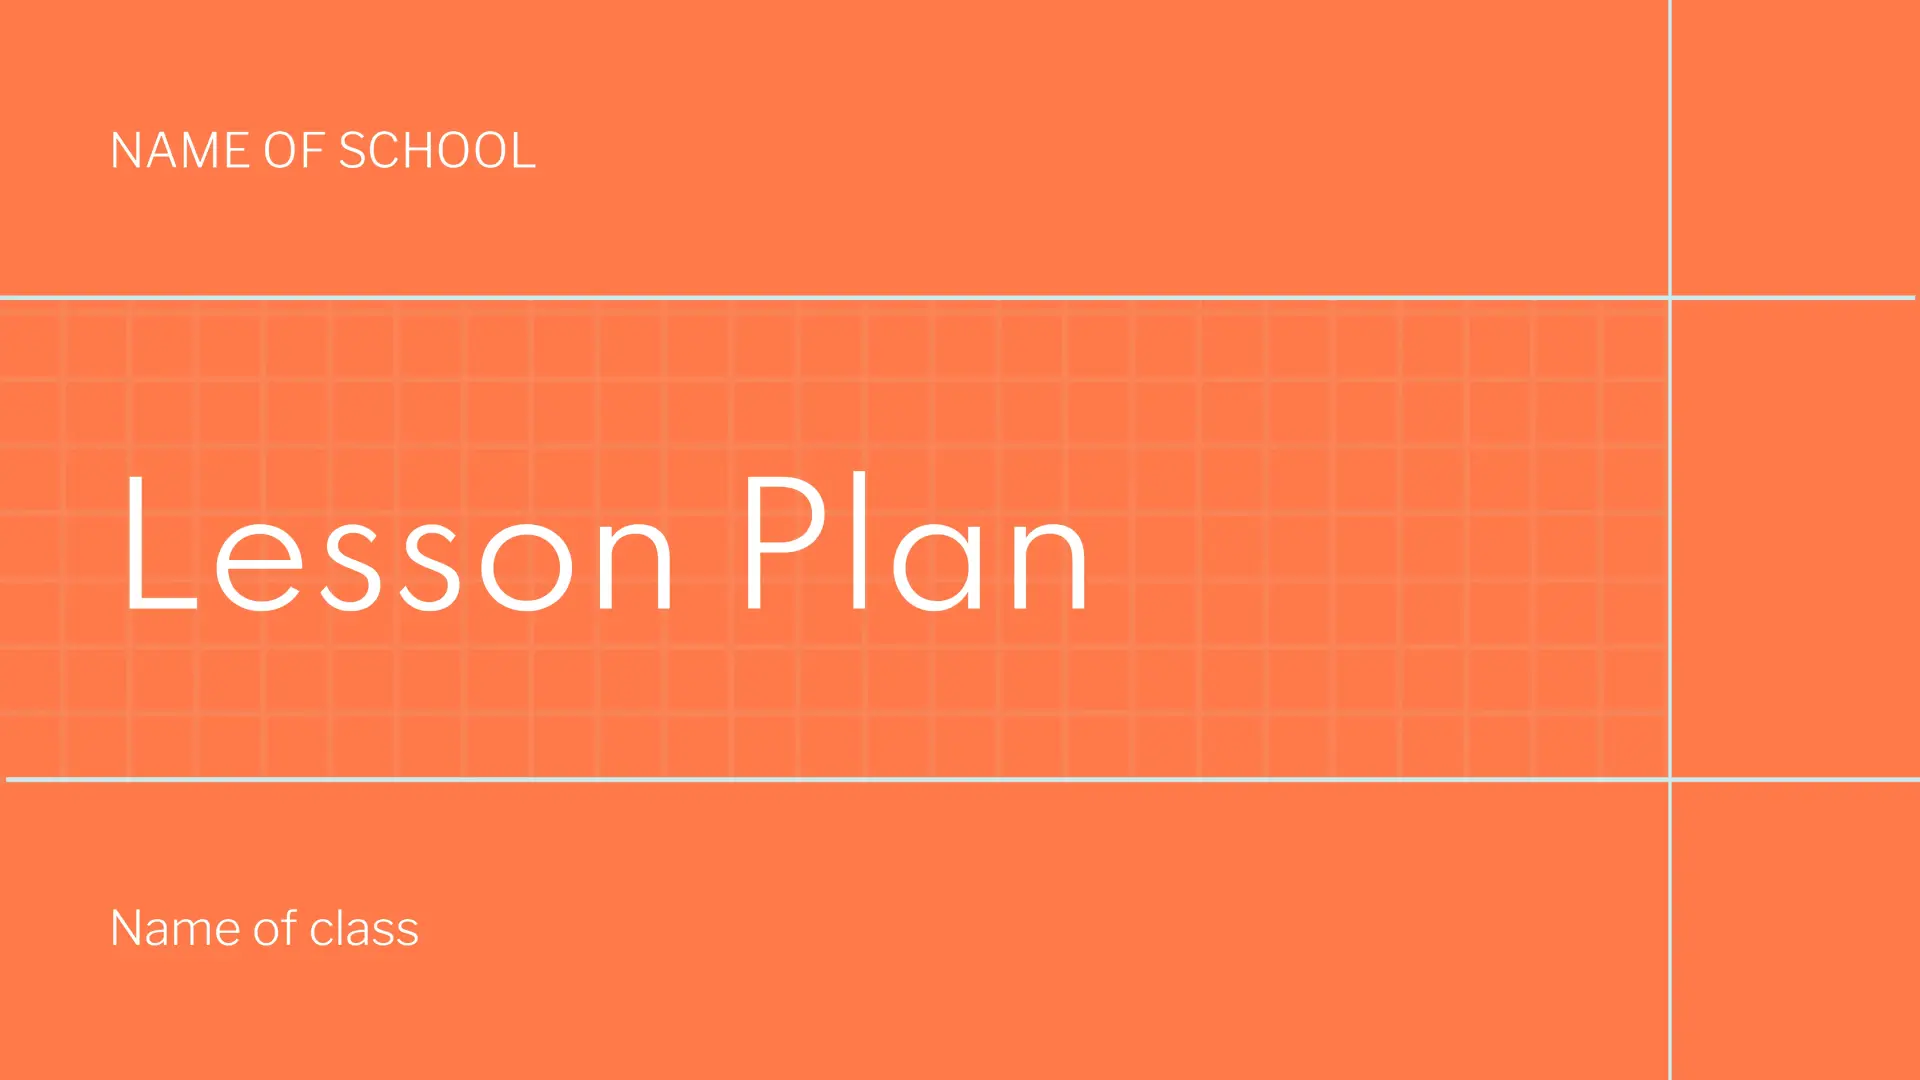 Lesson Plan Template for Google Slides